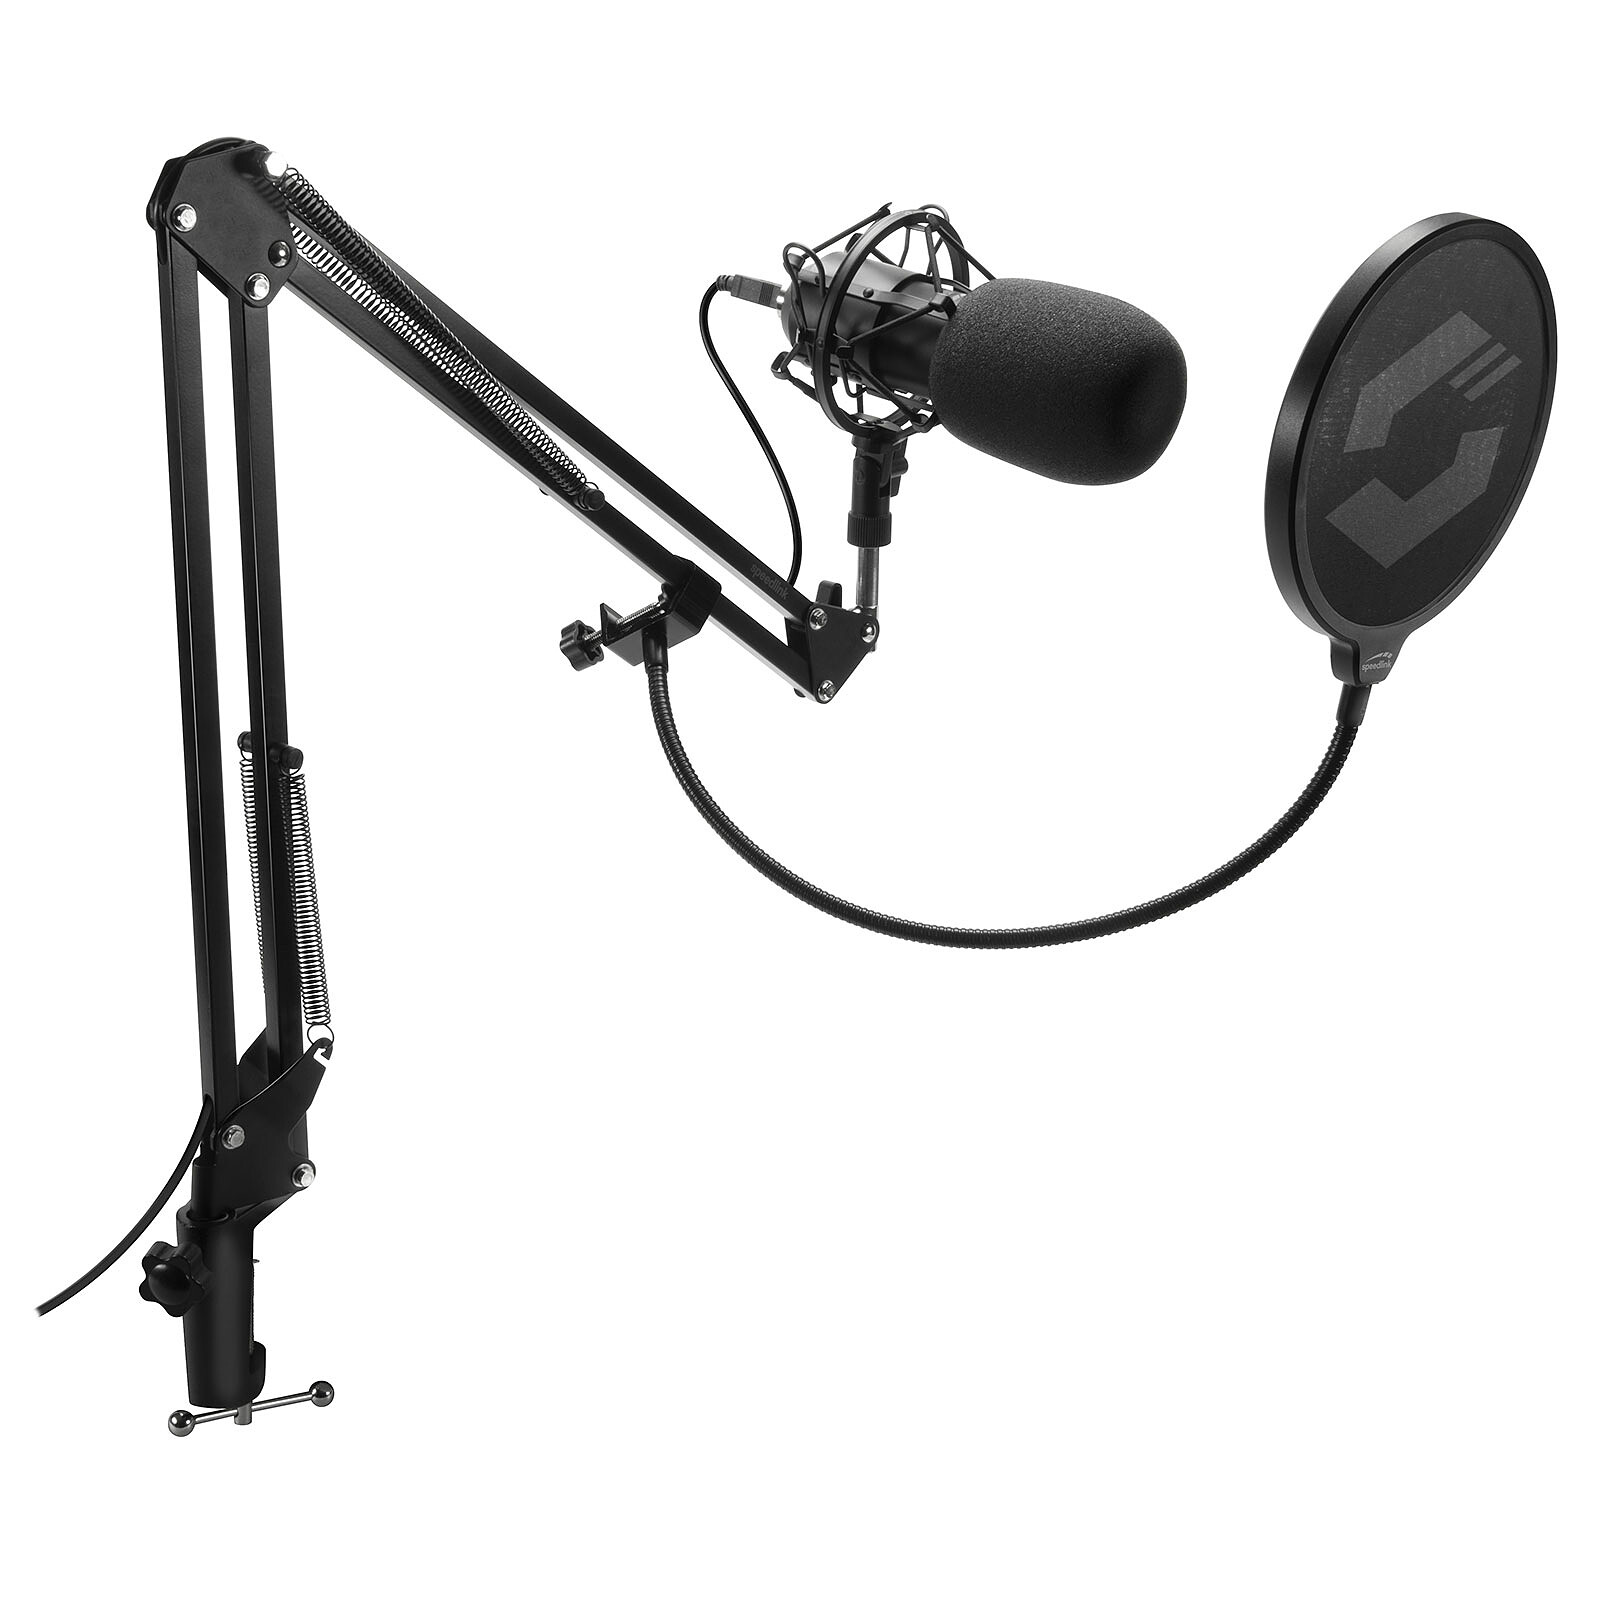 Tige de Microphone Réglable, Réducteur de Bruit, Connecteur Jack 3,5 Mm Speedlink Lucent Microphone de Bureau Flexible